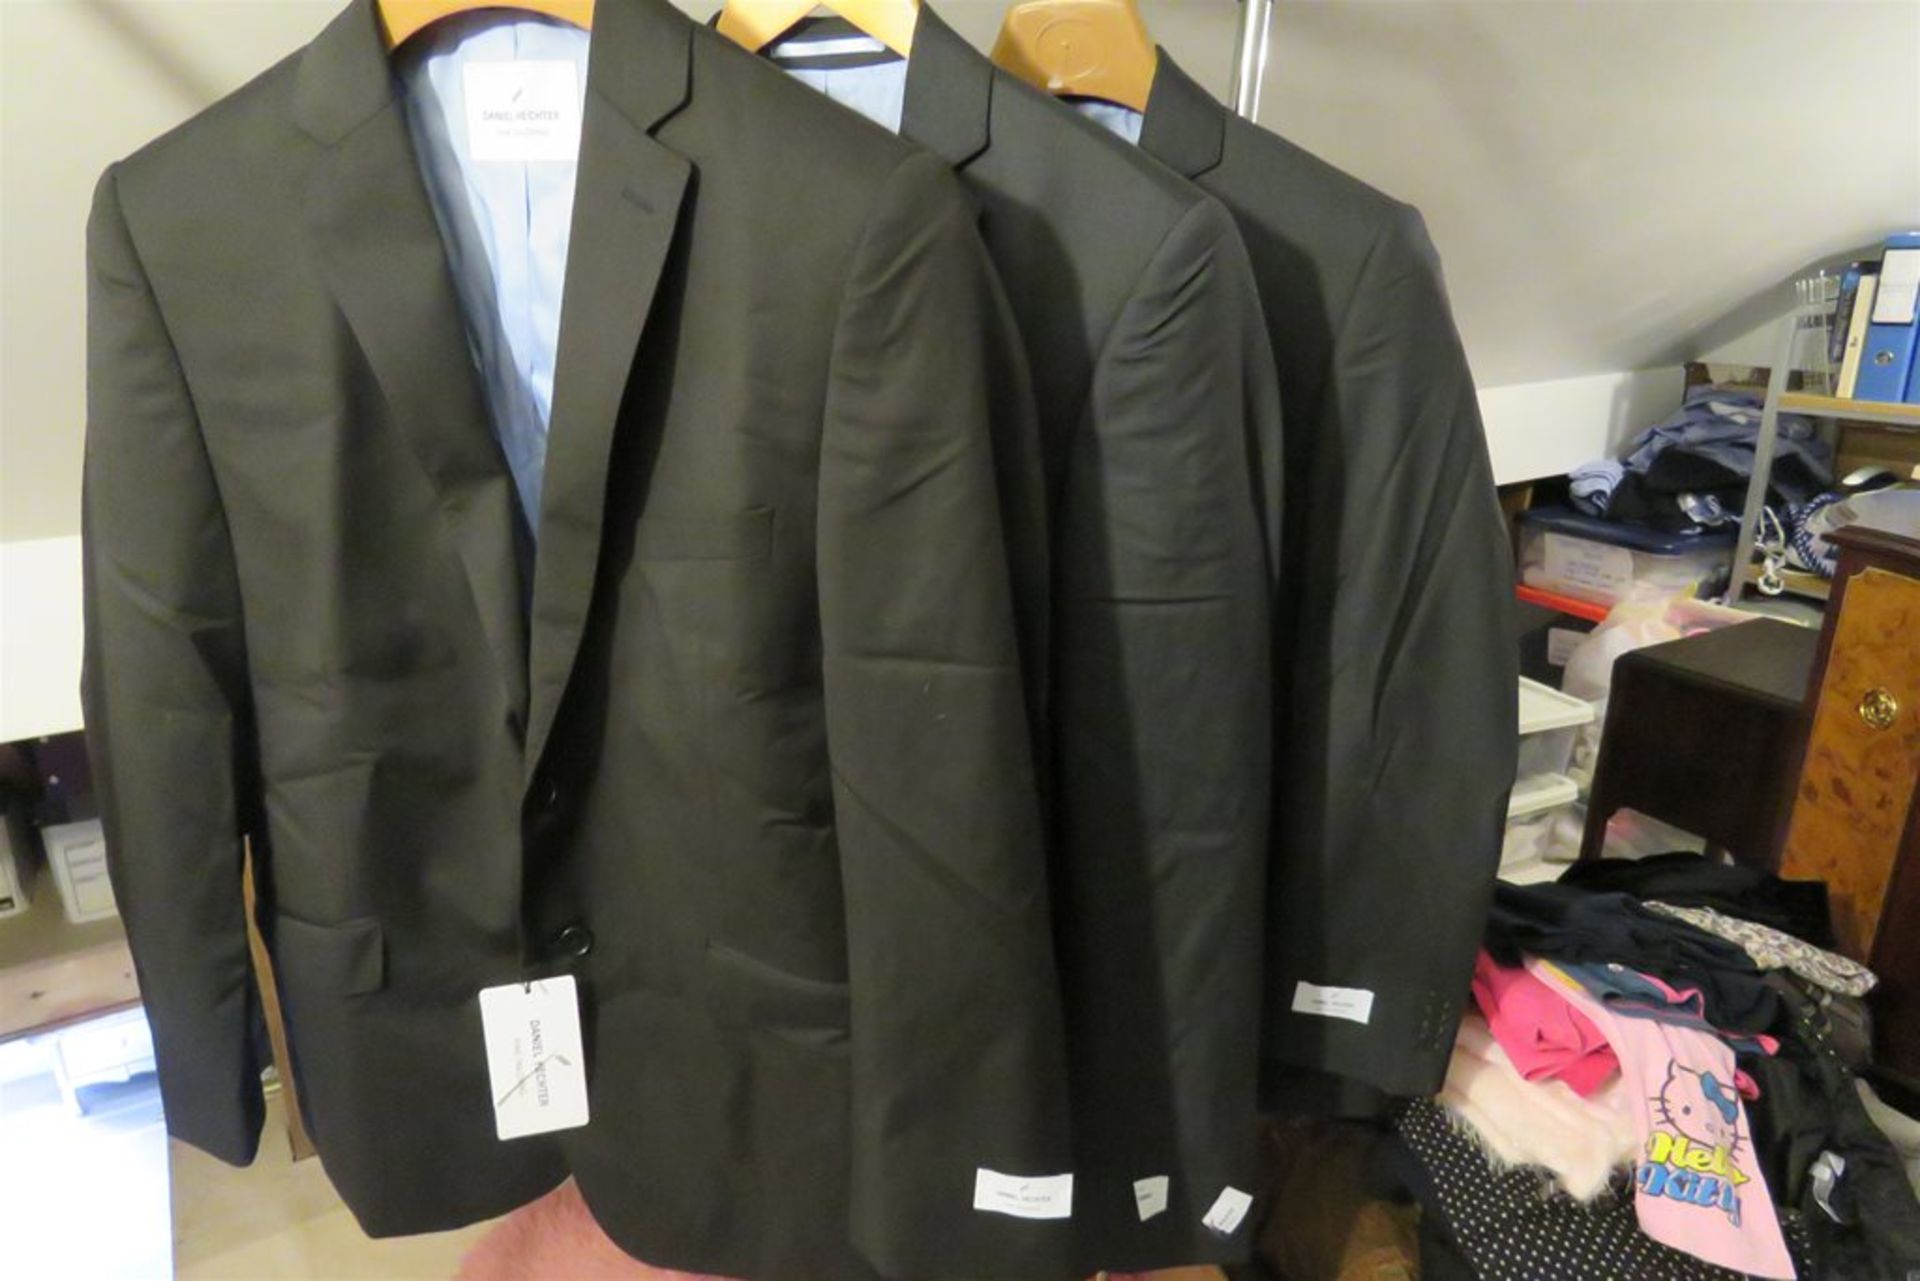 3x Daniel Hechter Suit Jackets - RRP £460